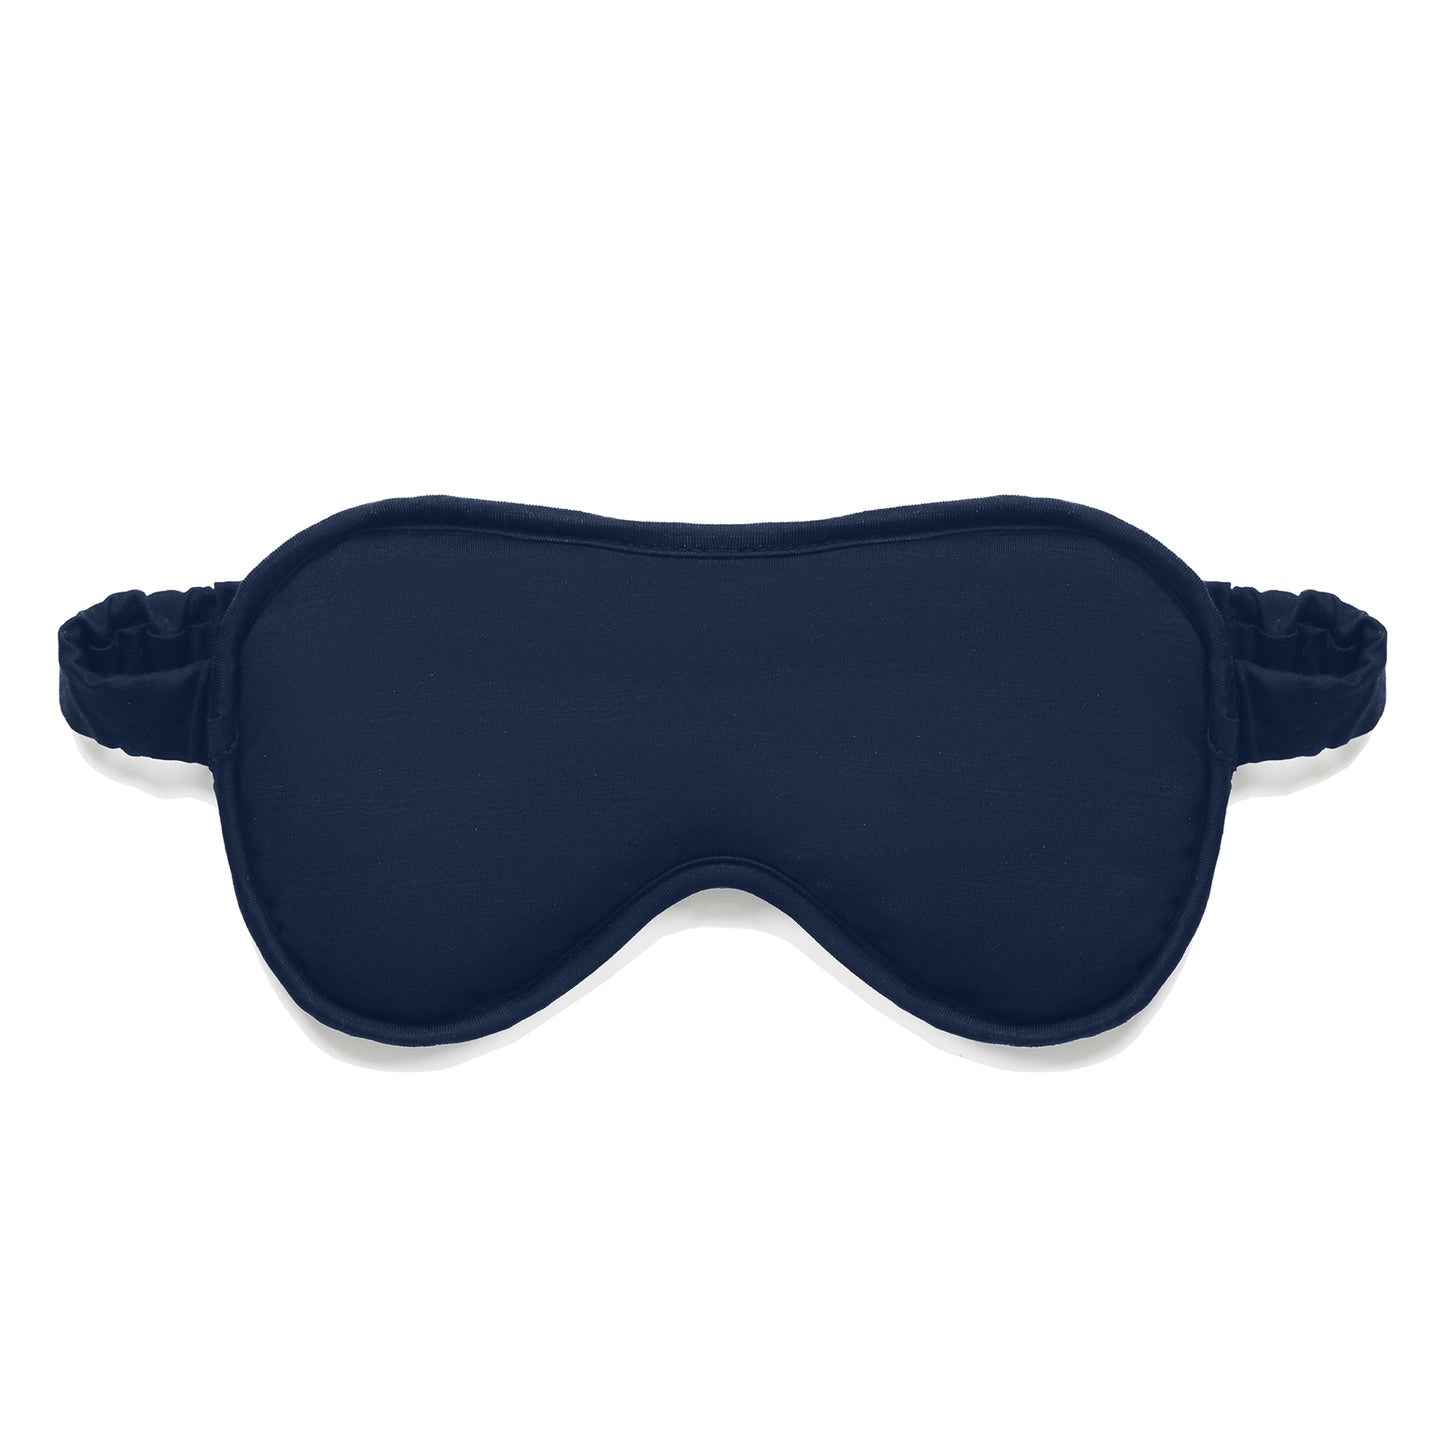 Gift set cooling slip dress mask || Navy blue